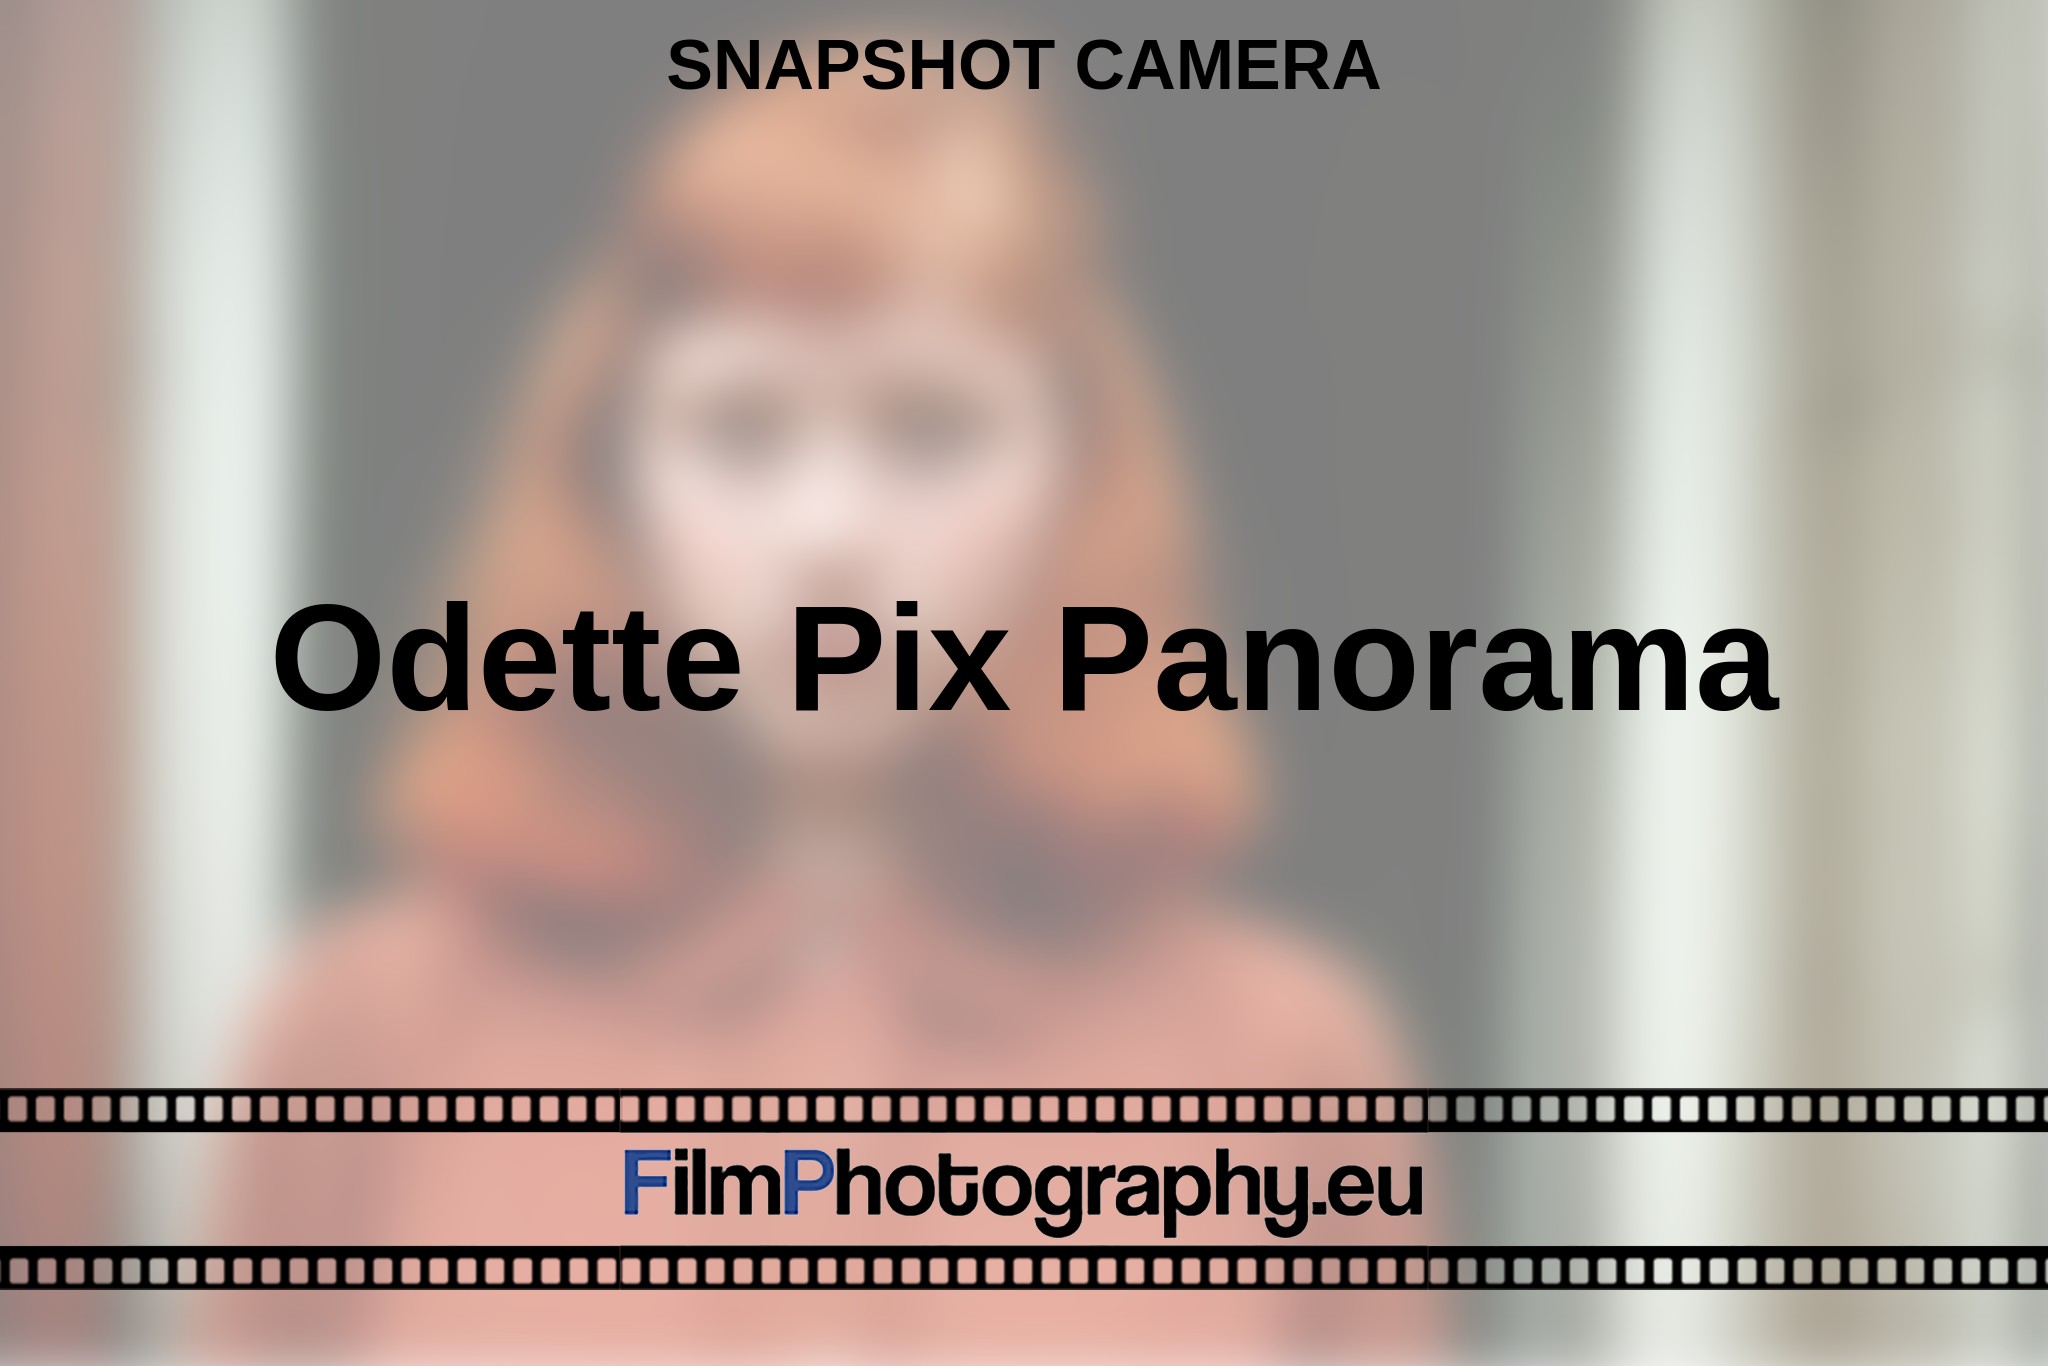 odette-pix-panorama-snapshot-camera-en-bnv.jpg